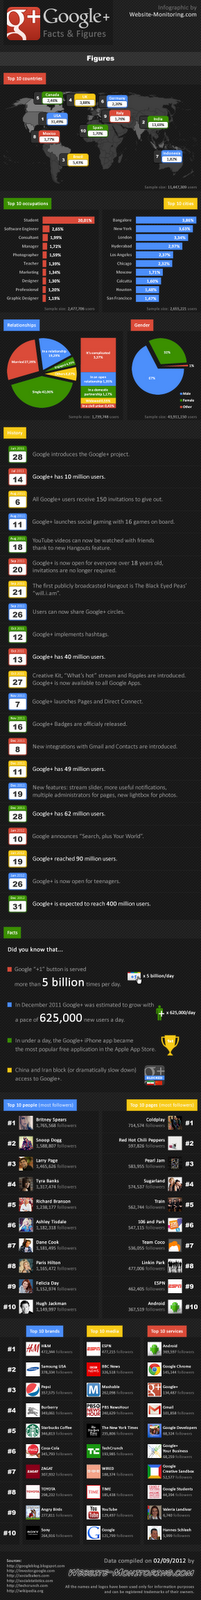 Statistiques sur Google+ (Infographie)